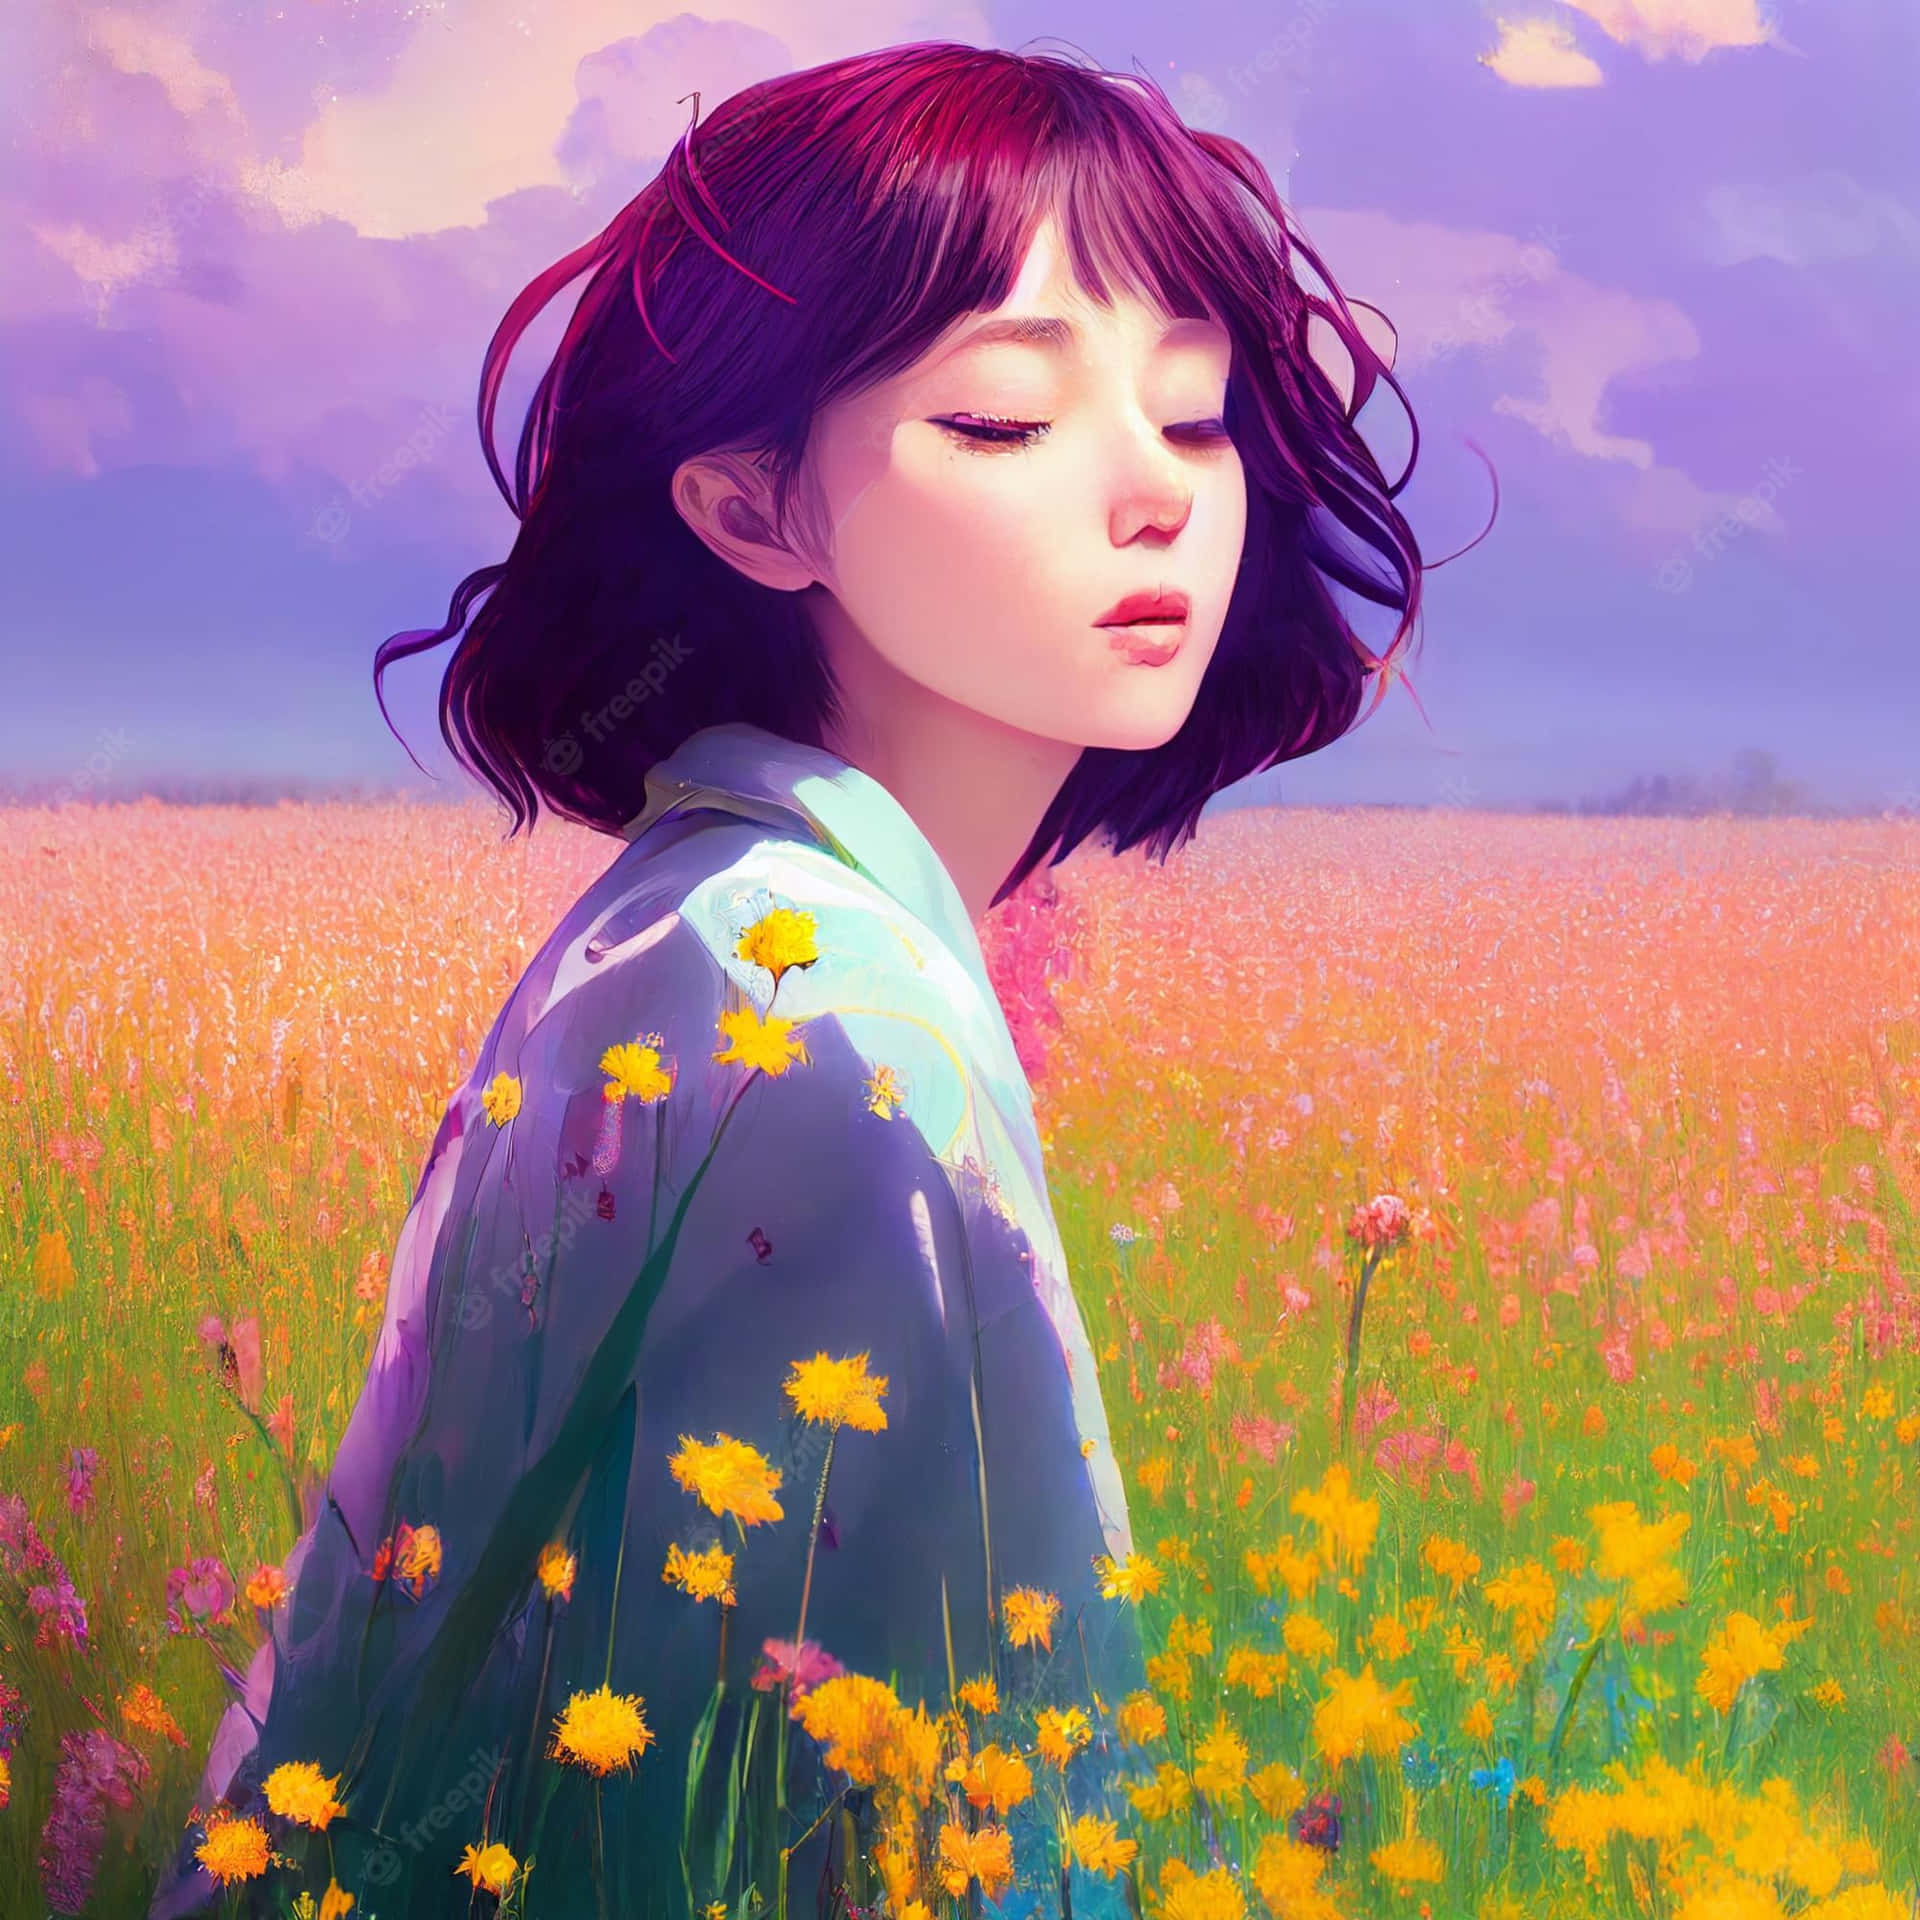 Korean Anime Girl On A Field Of Flowers Wallpaper